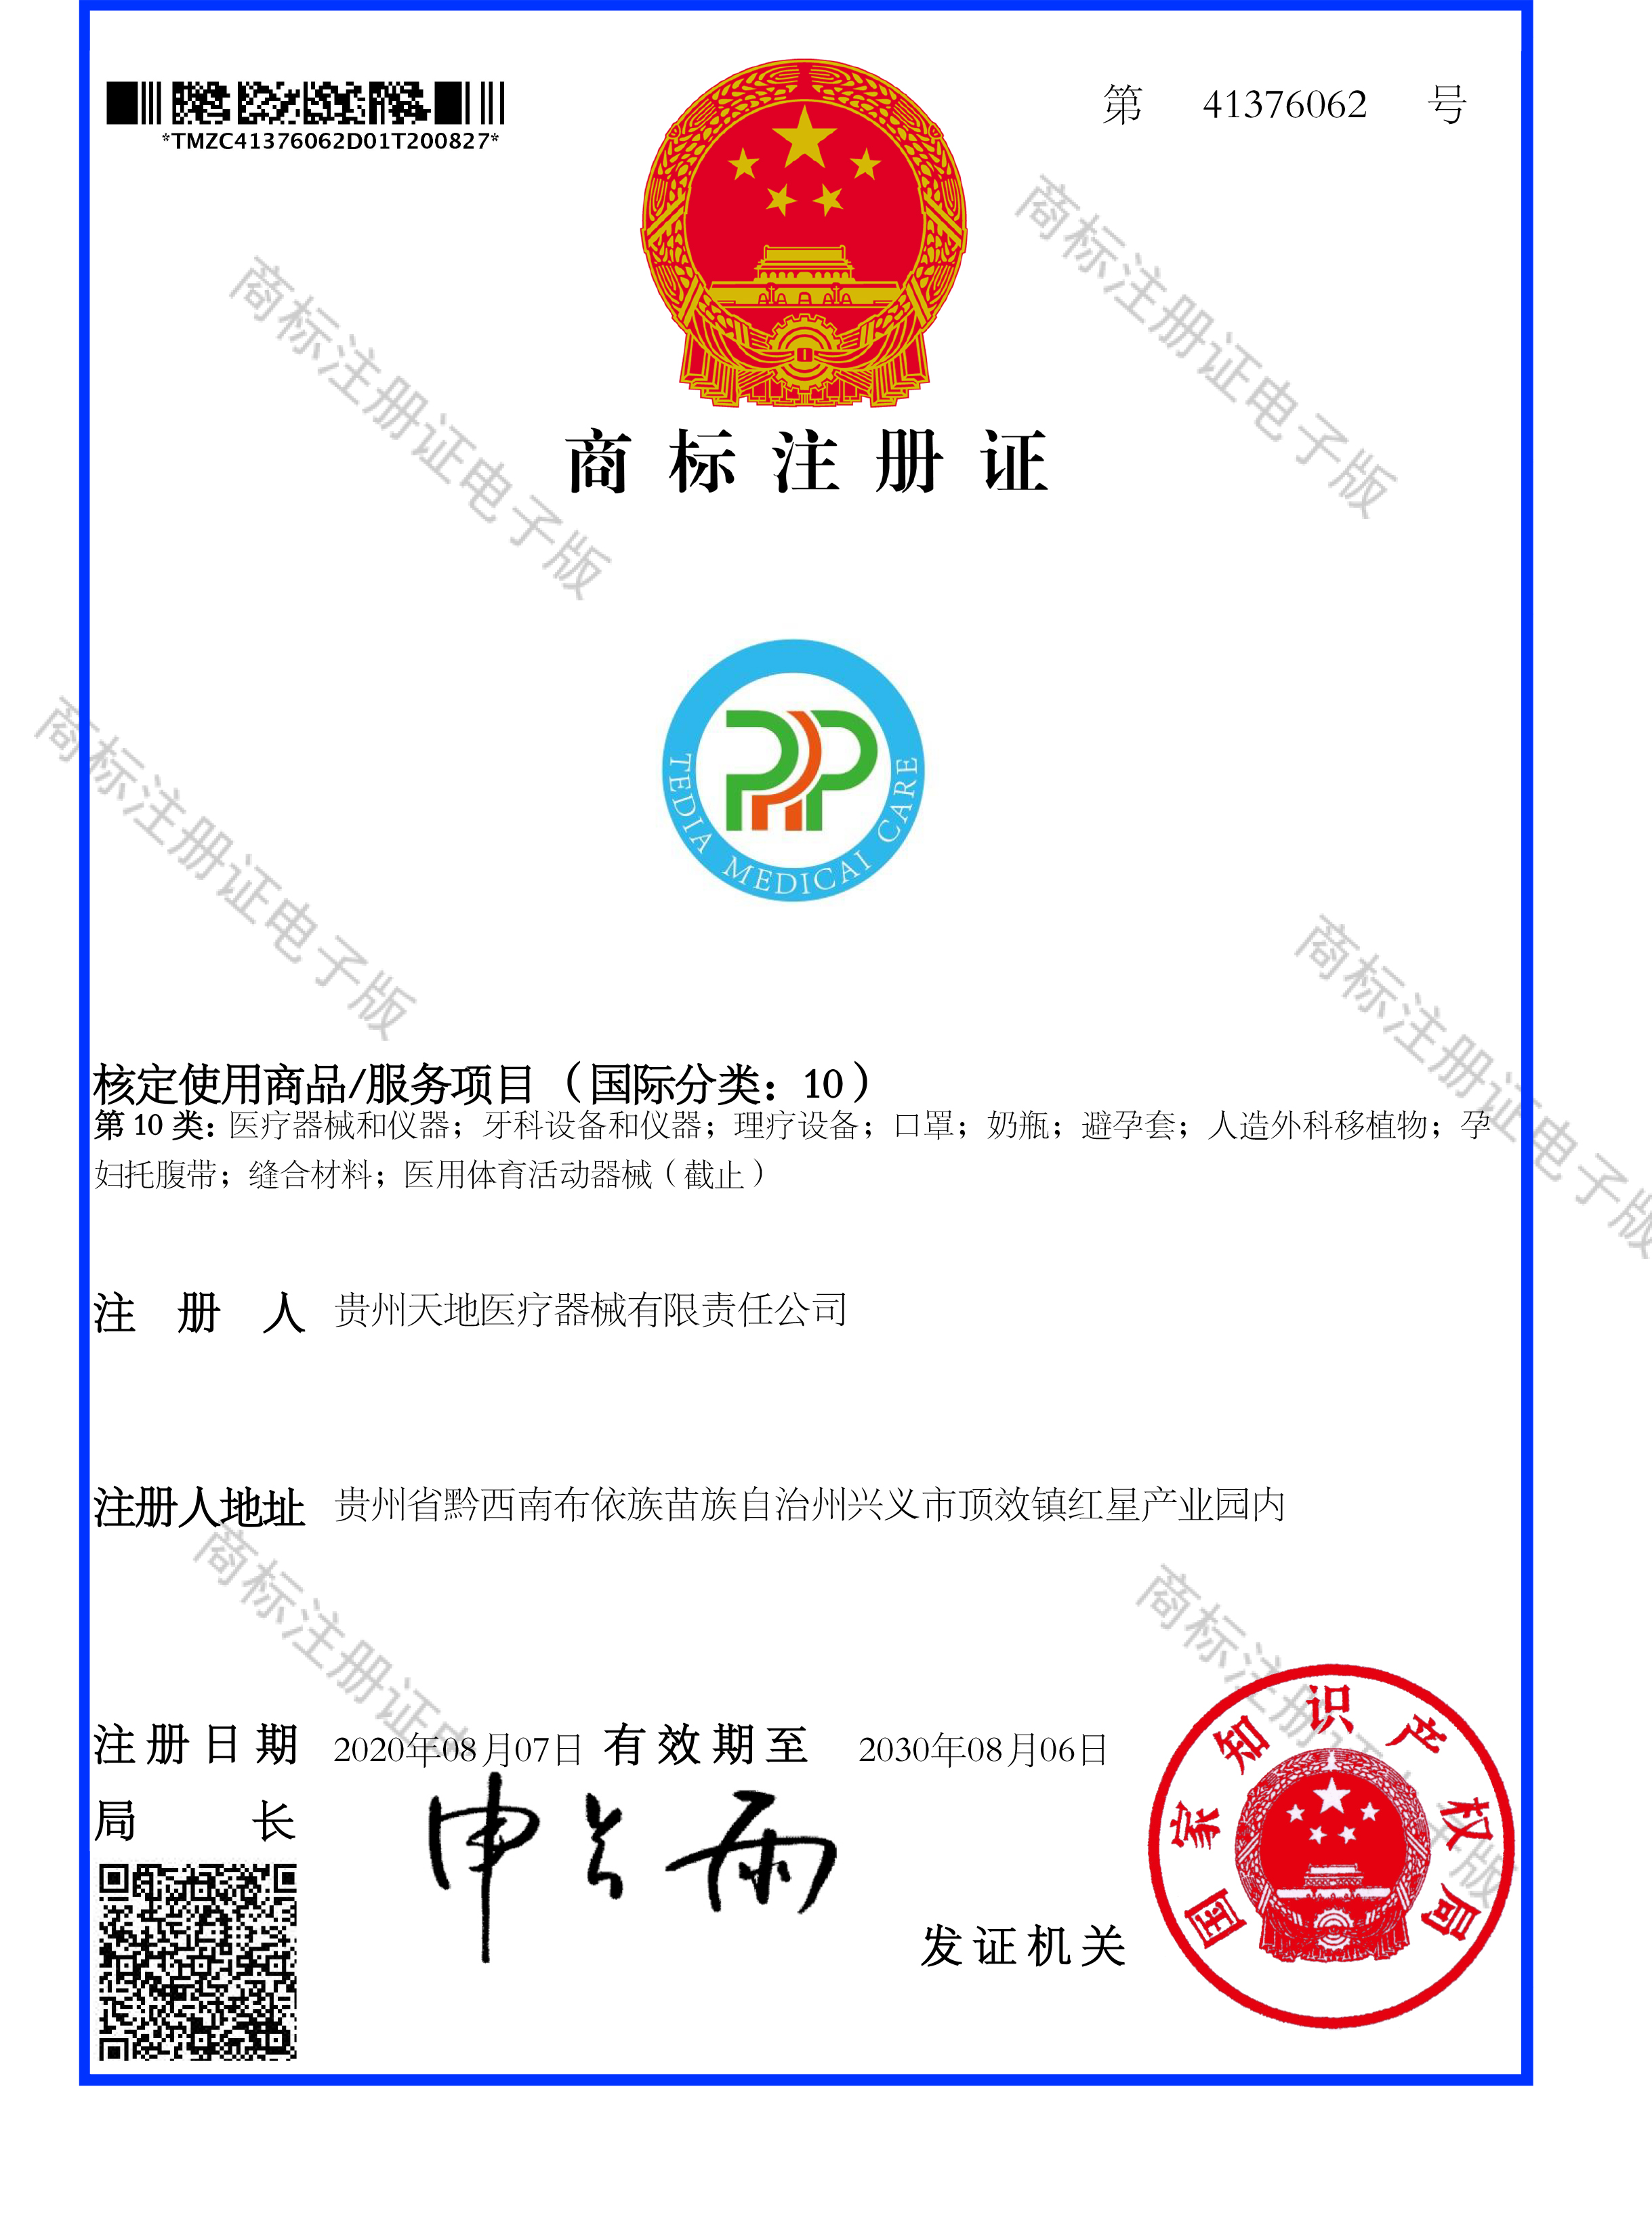 PRP商標注冊證